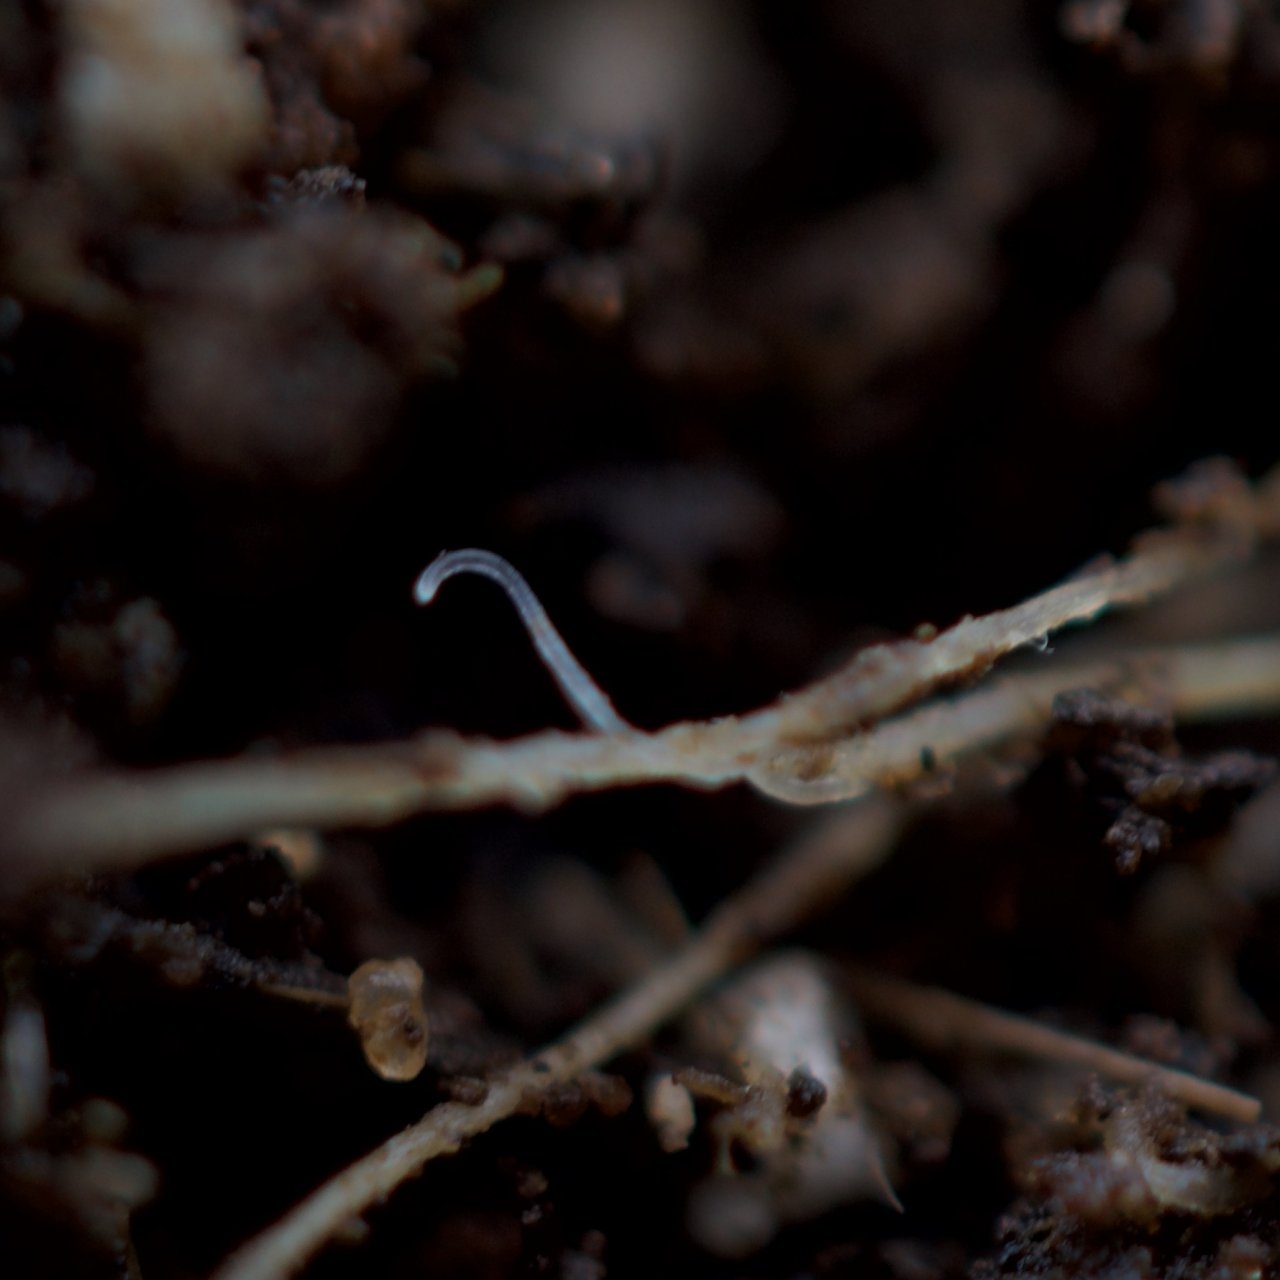 Fungus Gnat larvae on root.jpeg